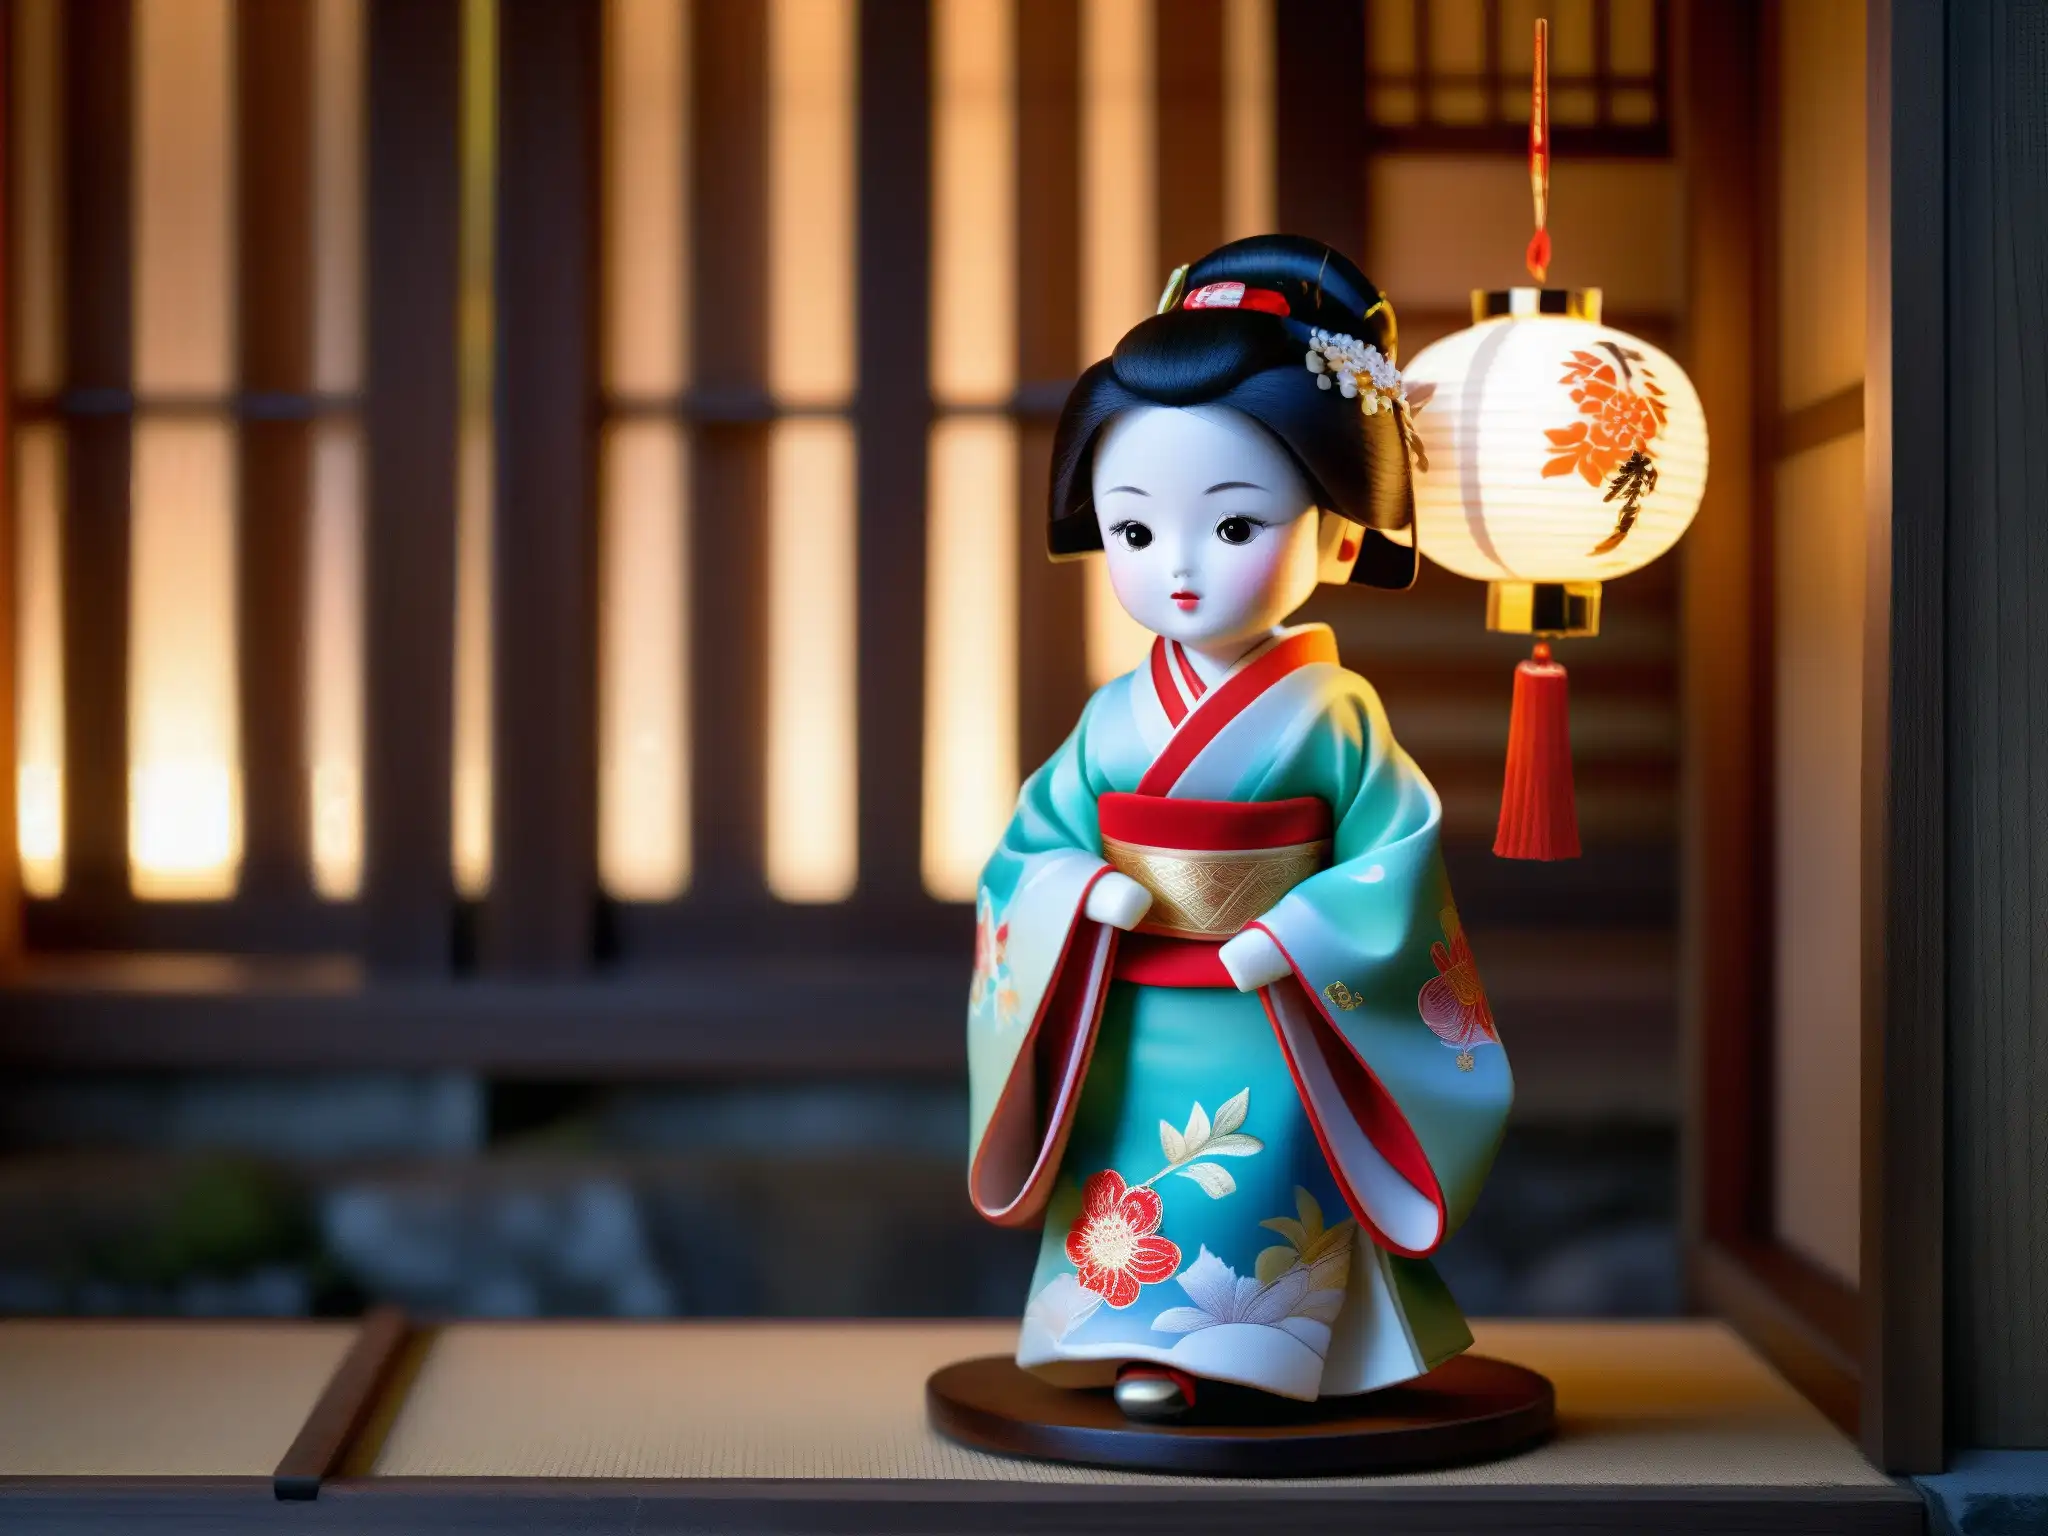 Una muñeca japonesa de porcelana en un kimono vibrante, en un templo antiguo iluminado por linternas, evocando el origen y misterio de Okiku